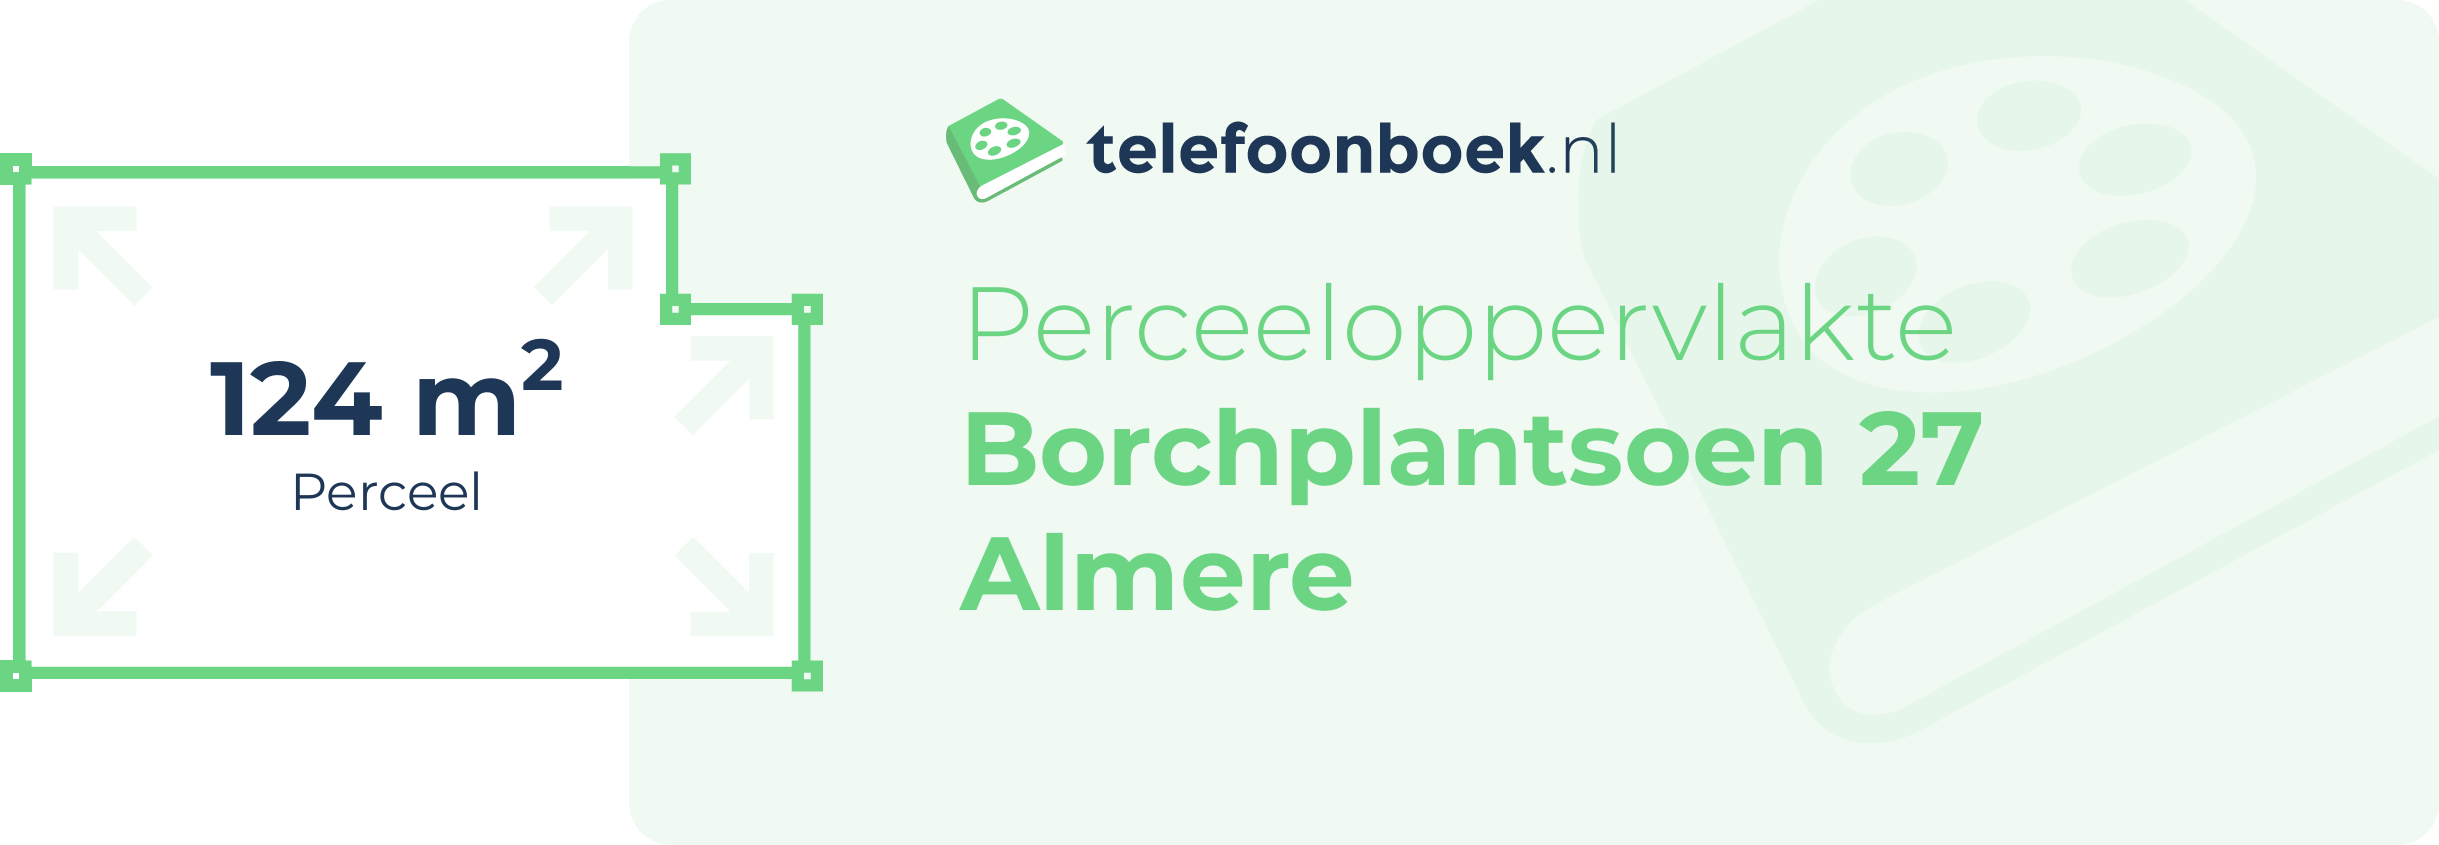 Perceeloppervlakte Borchplantsoen 27 Almere